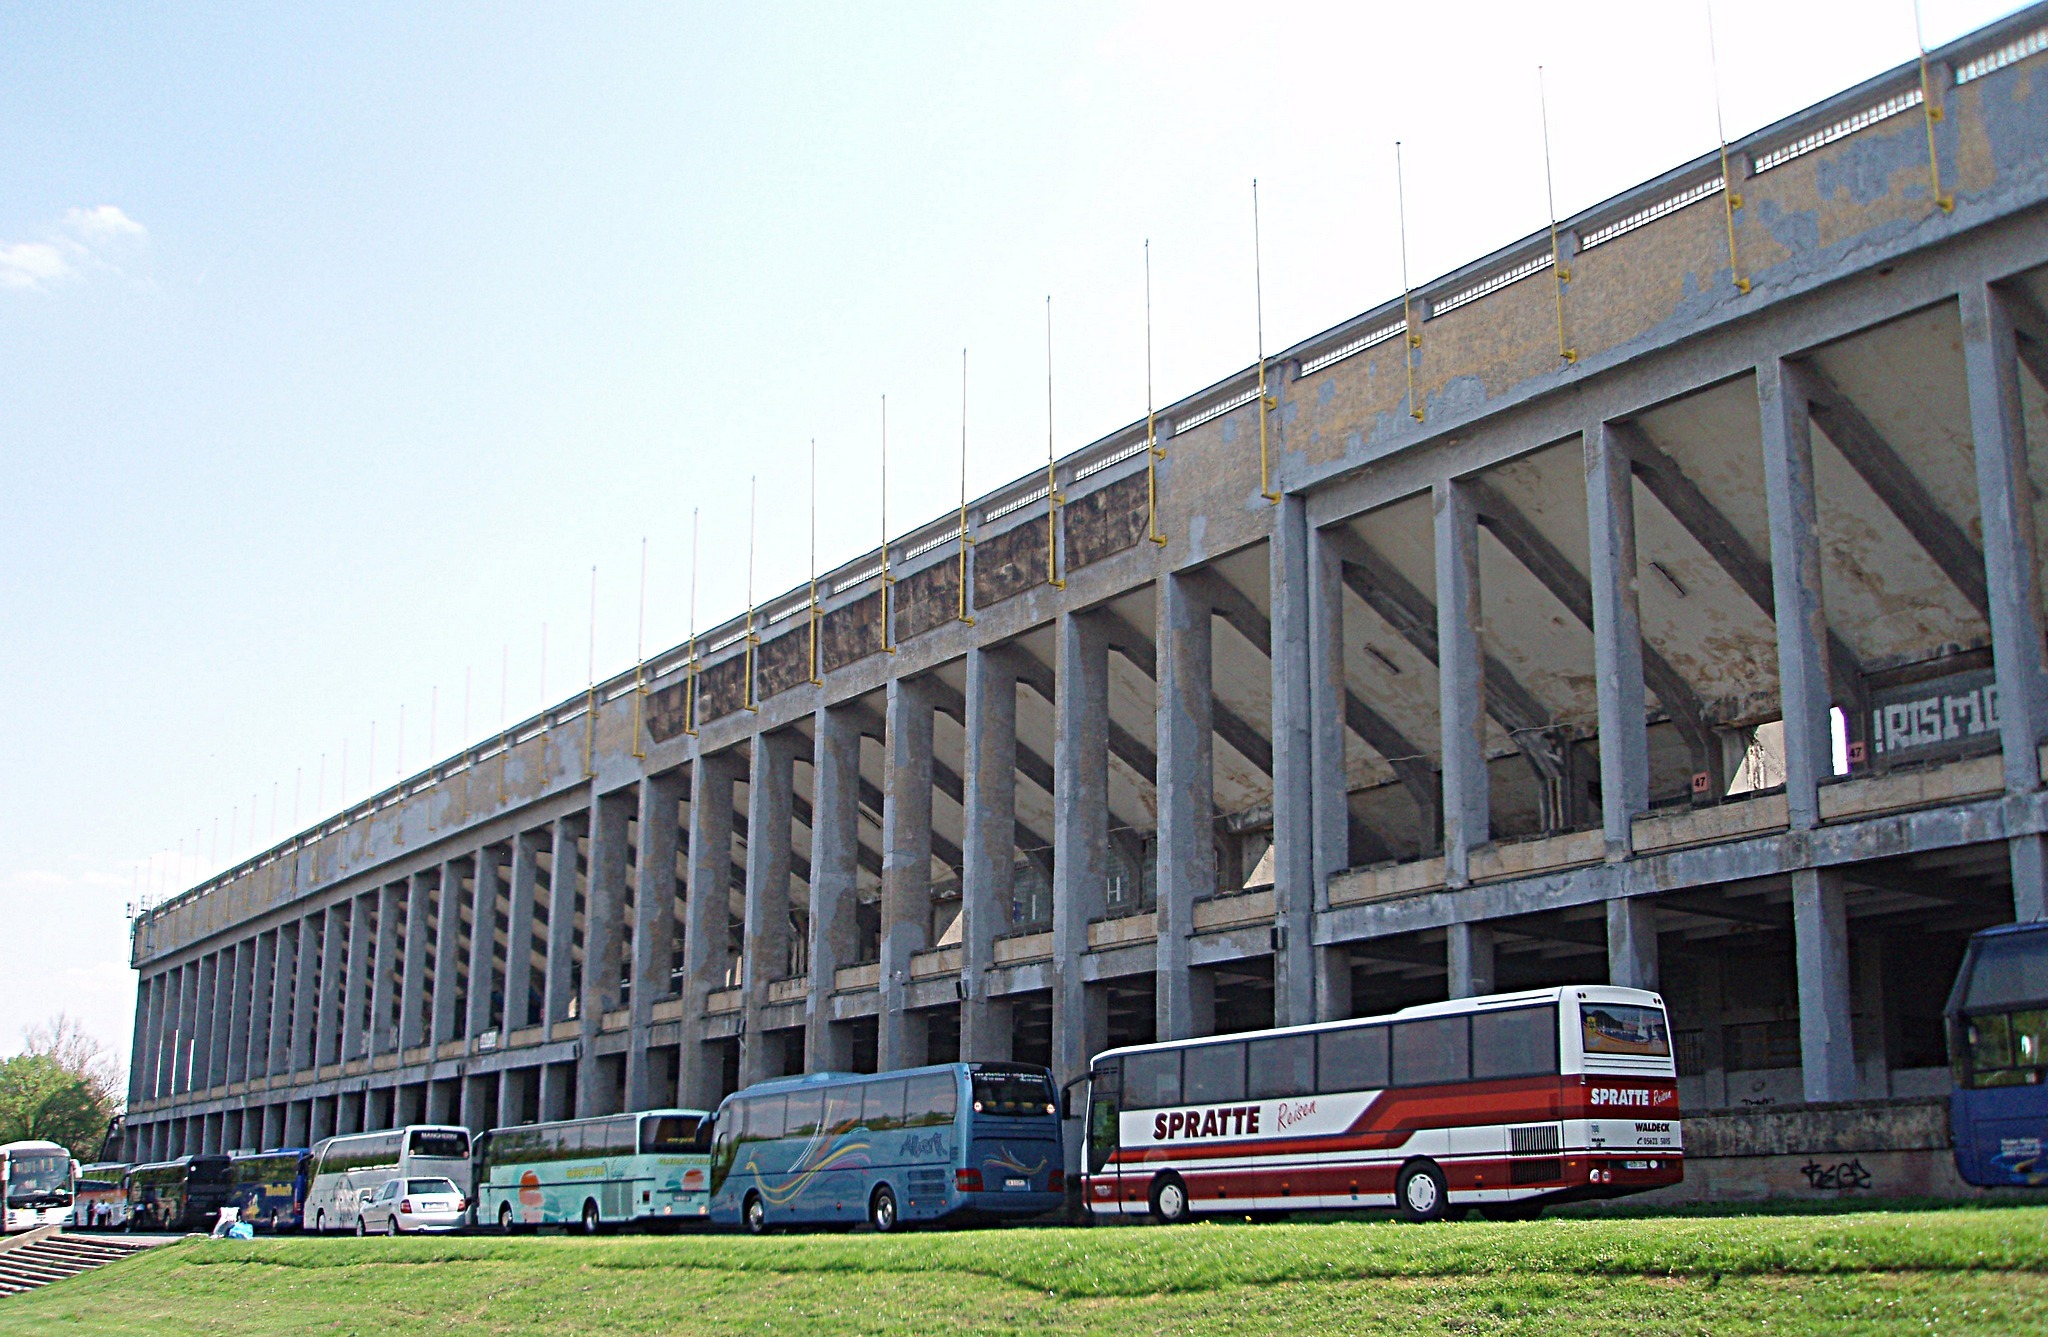 Velký strahovský stadion, 2011 - Autor: Mister No, licence CC BY SA 3.0, https://commons.wikimedia.org/wiki/File:Velk%C3%BD_strahovsk%C3%BD_stadion_-_panoramio_(1).jpg